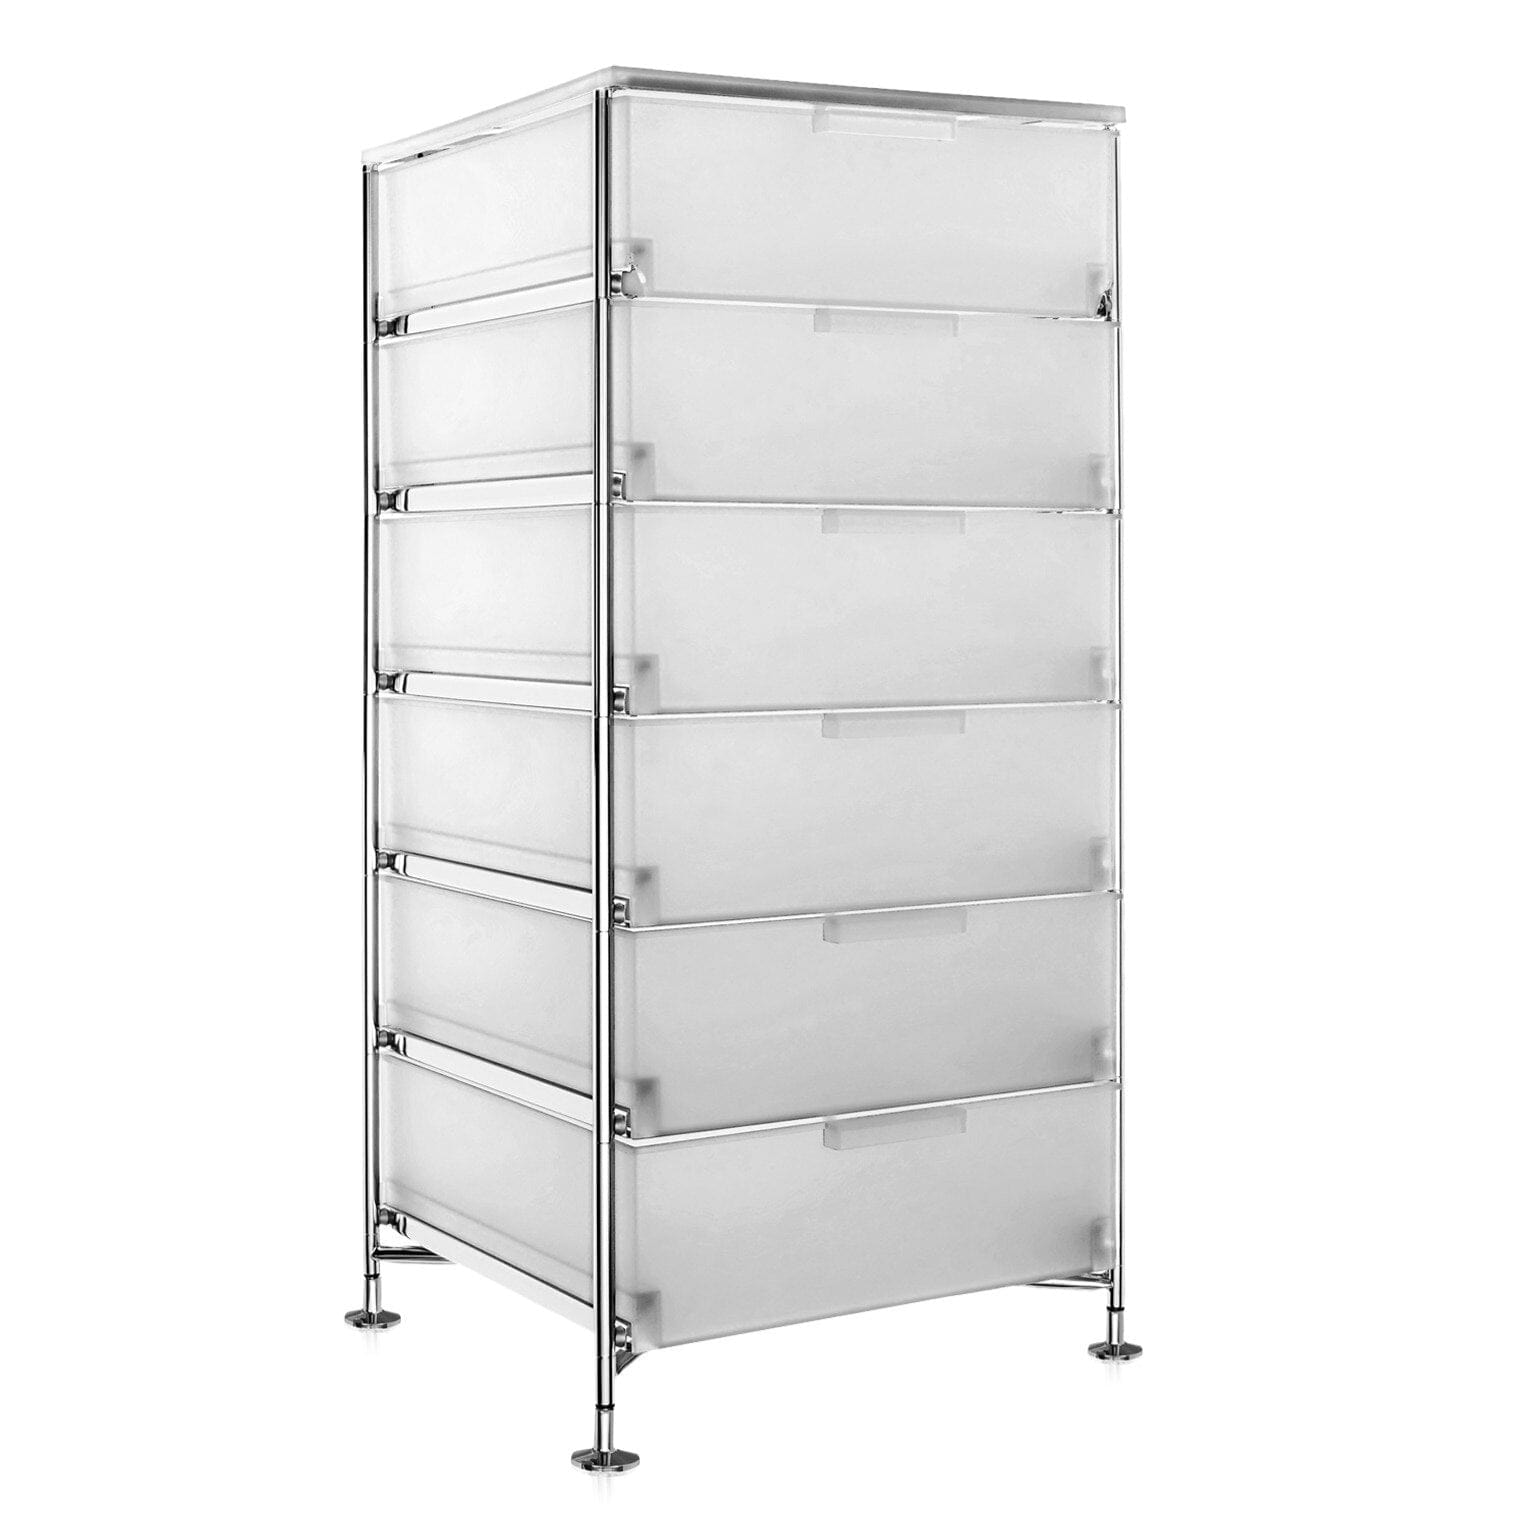 A 6 draw storage unit by Kartell.